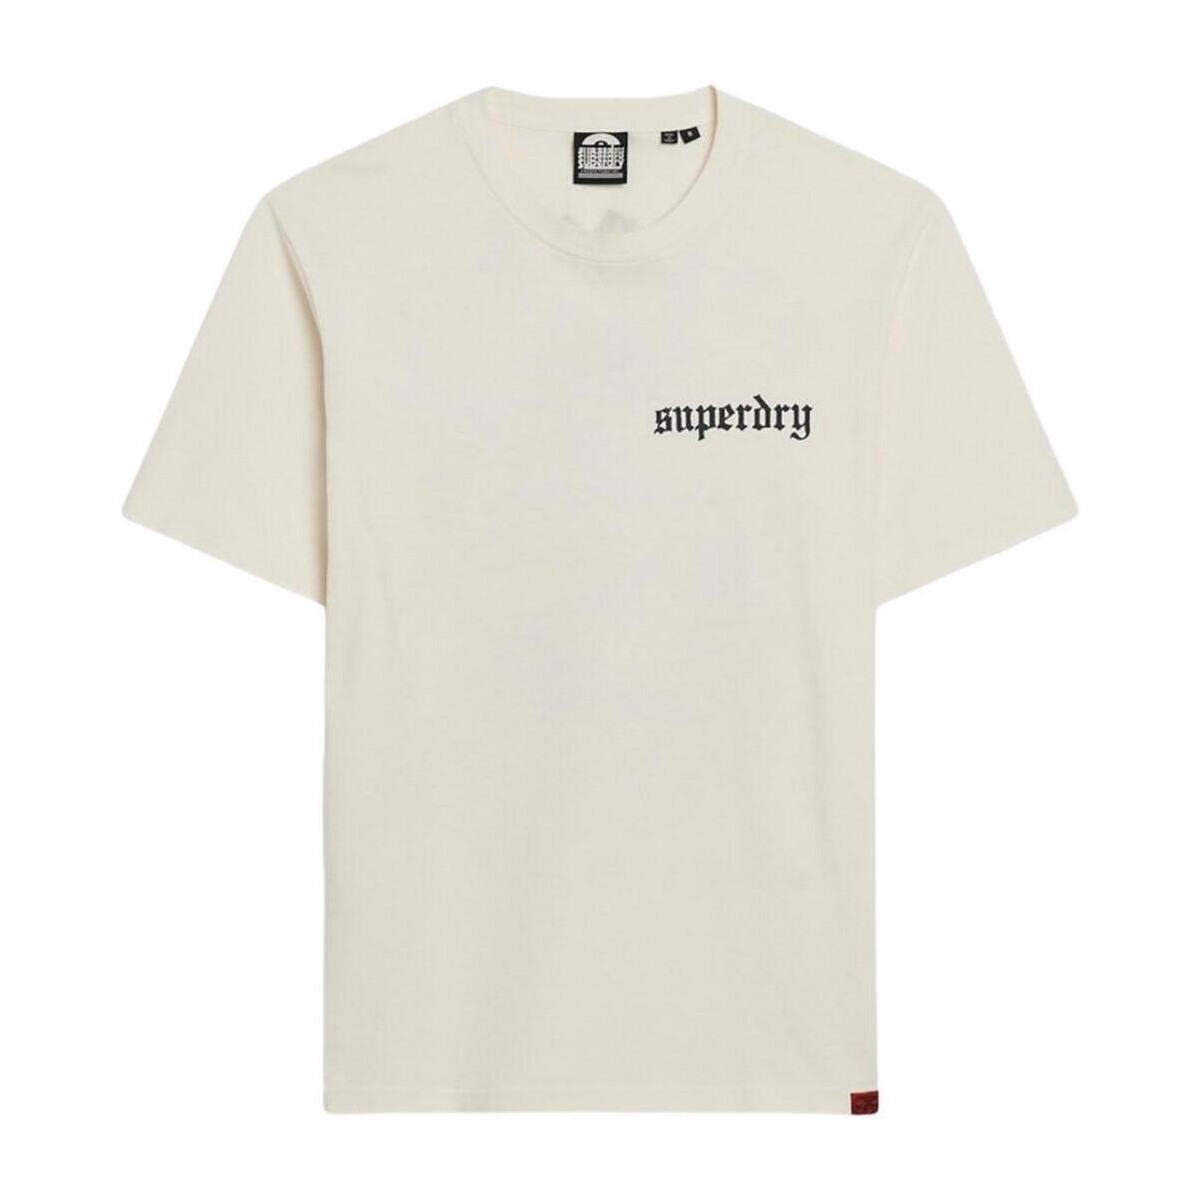 Abbigliamento Uomo T-shirt maniche corte Superdry  Beige